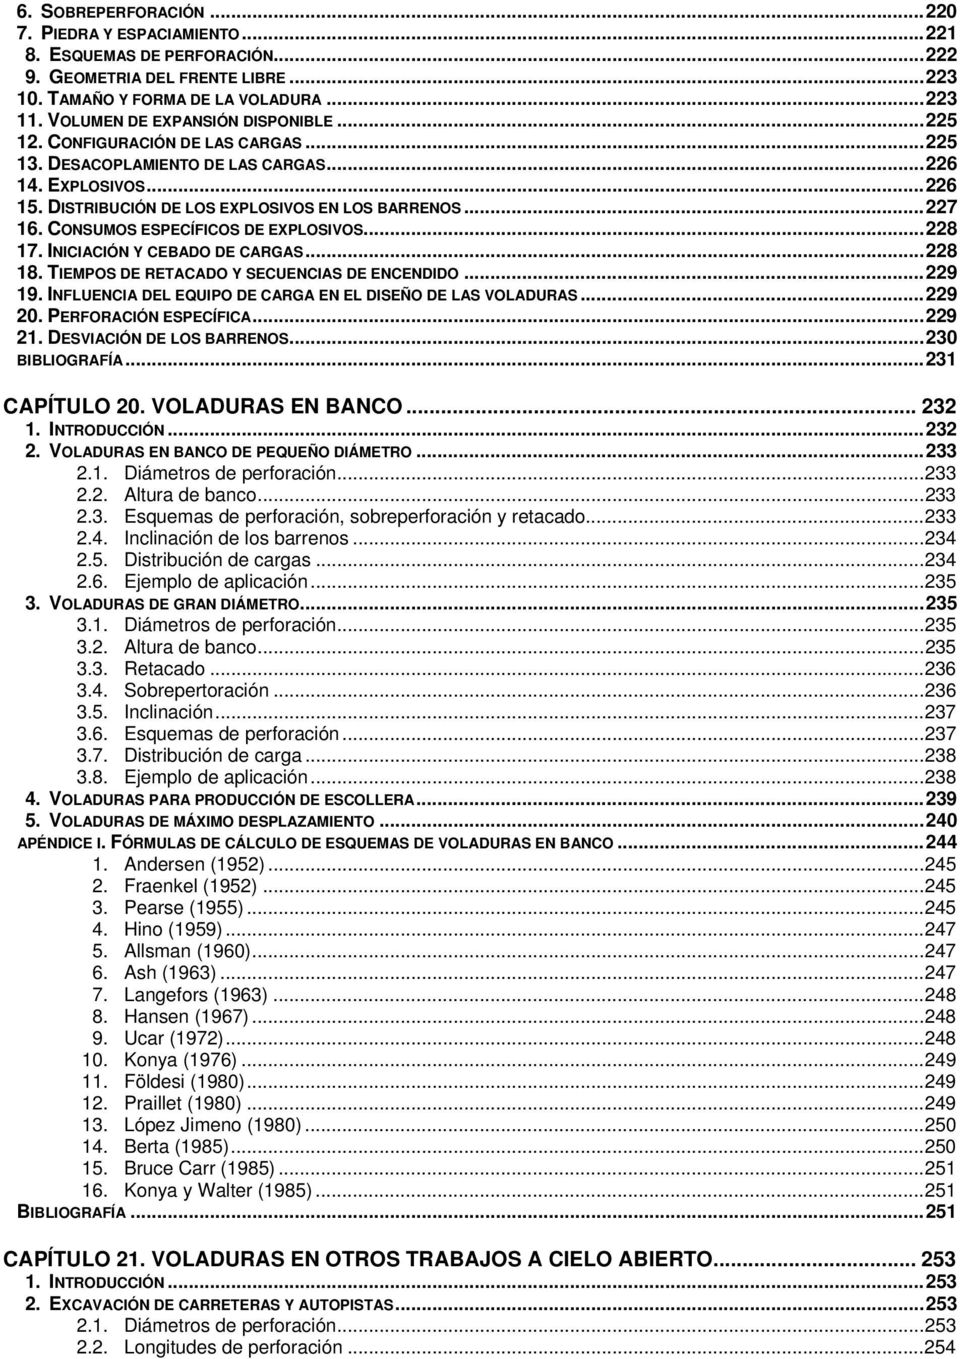 CONSUMOS ESPECÍFICOS DE EXPLOSIVOS...228 17. INICIACIÓN Y CEBADO DE CARGAS...228 18. TIEMPOS DE RETACADO Y SECUENCIAS DE ENCENDIDO...229 19.